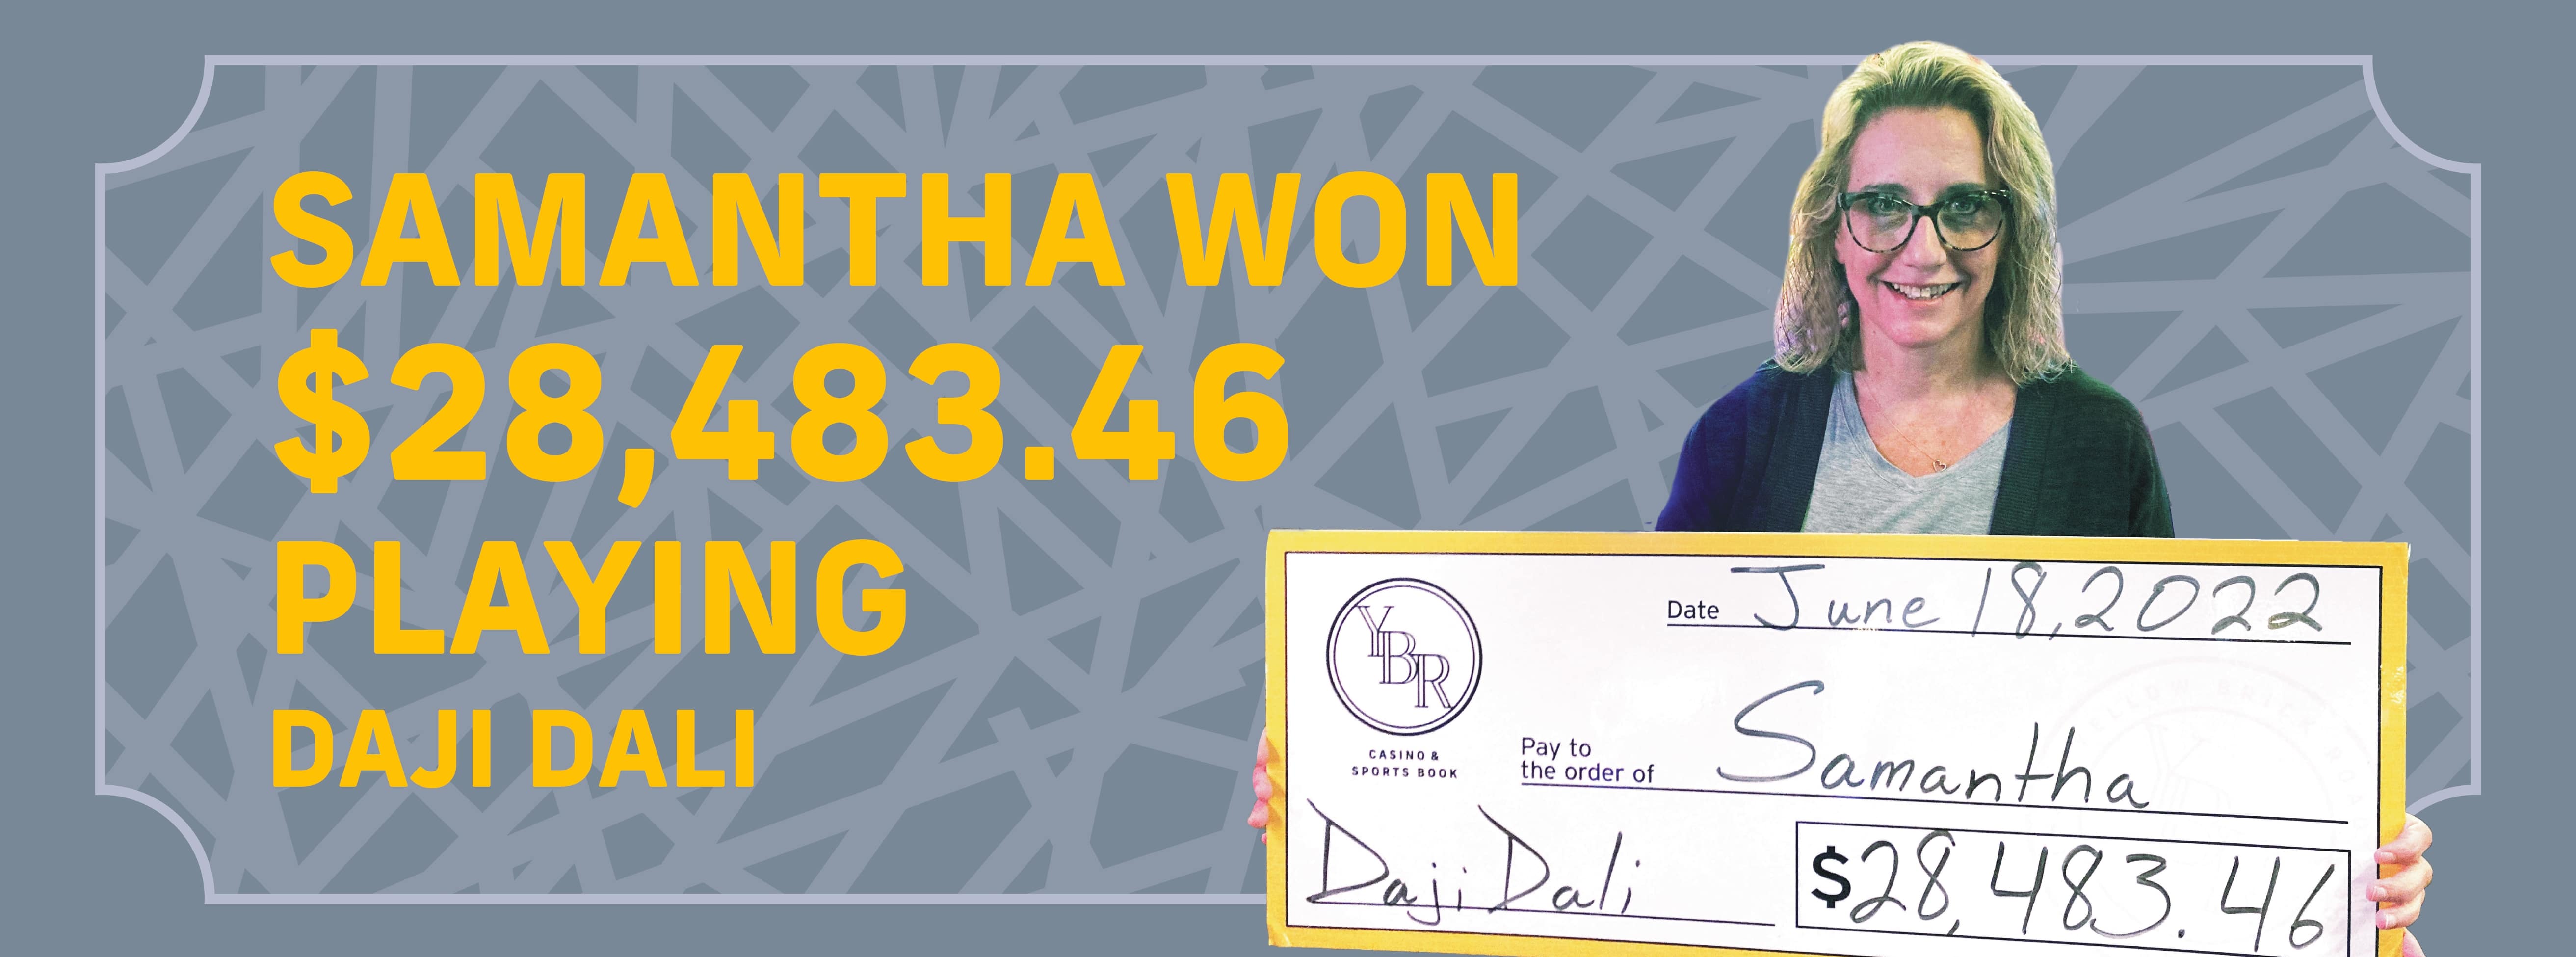 Samantha won $28,483 playing Daji Dali